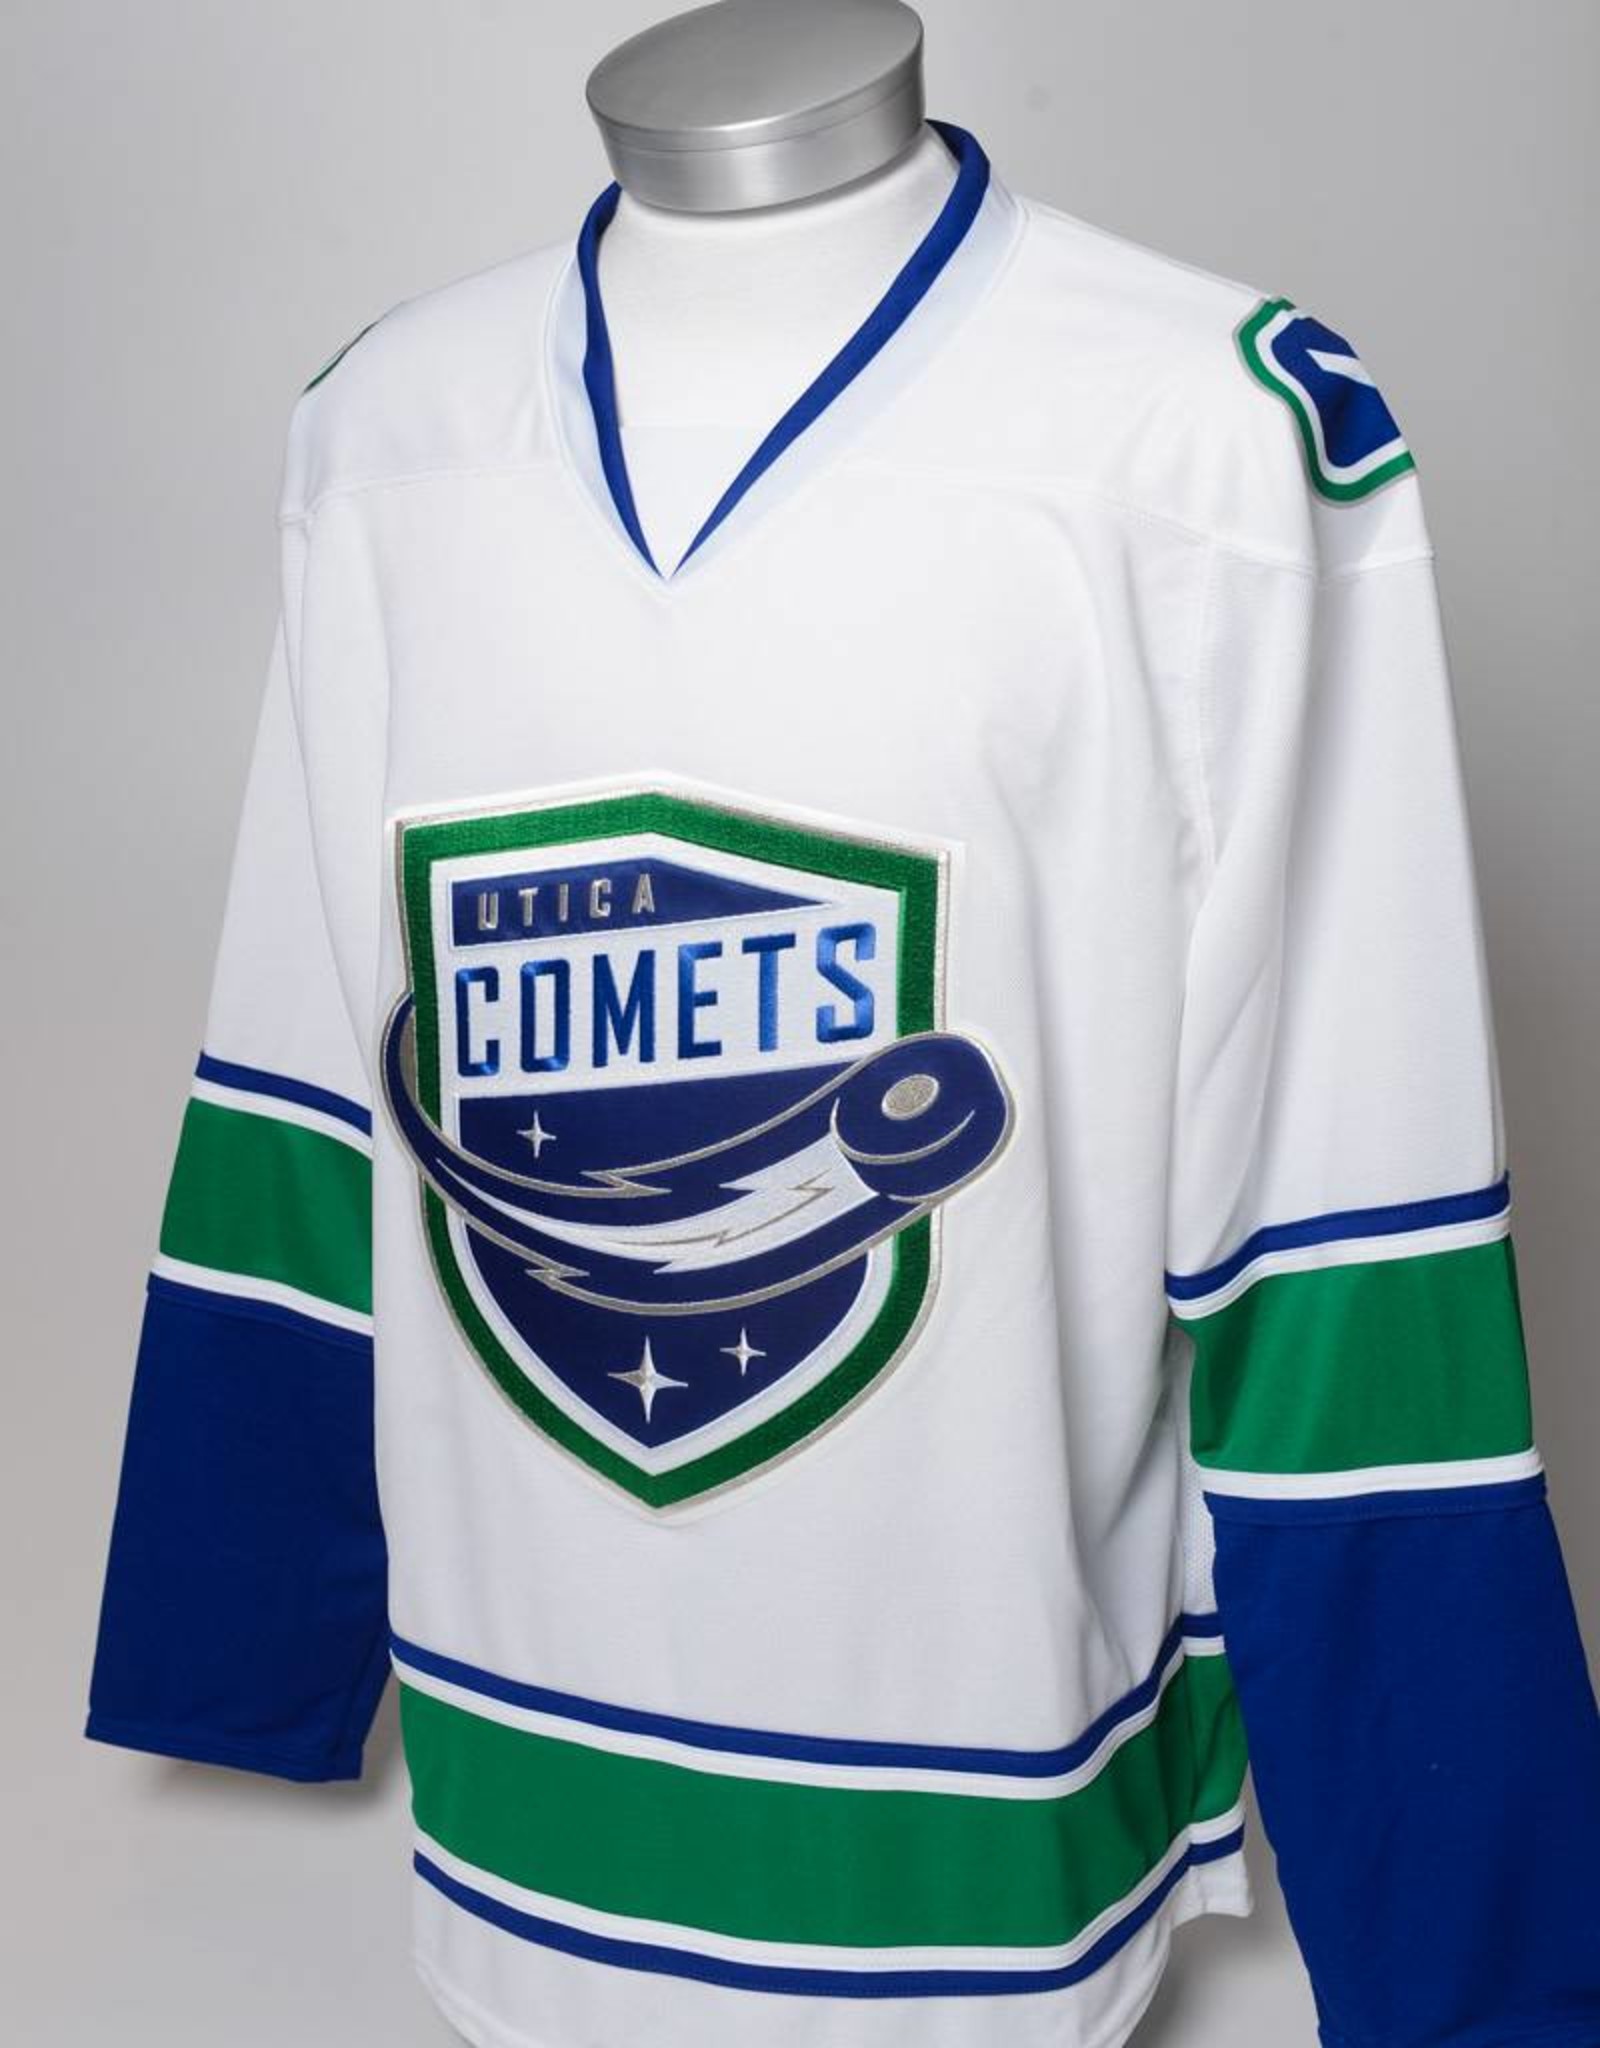 buy utica comets jersey